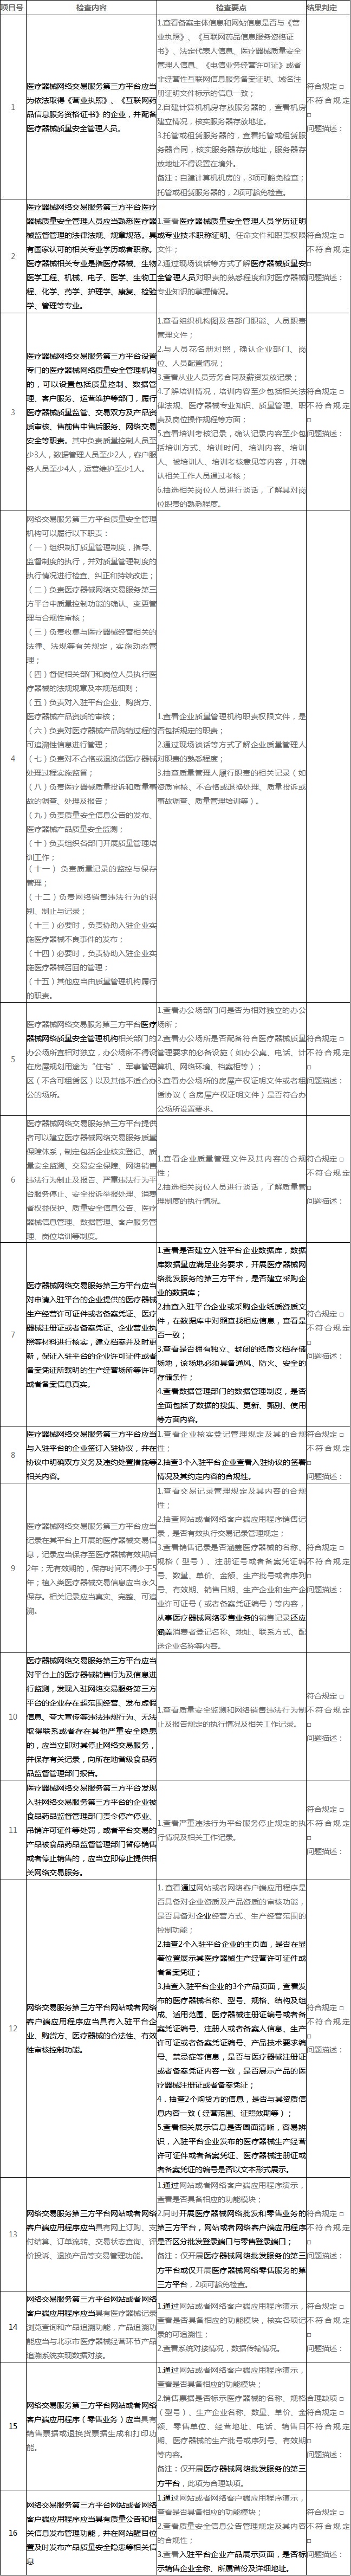 附件6：北京市医疗器械网络交易服务第三方平台现场检查评定细则.jpg